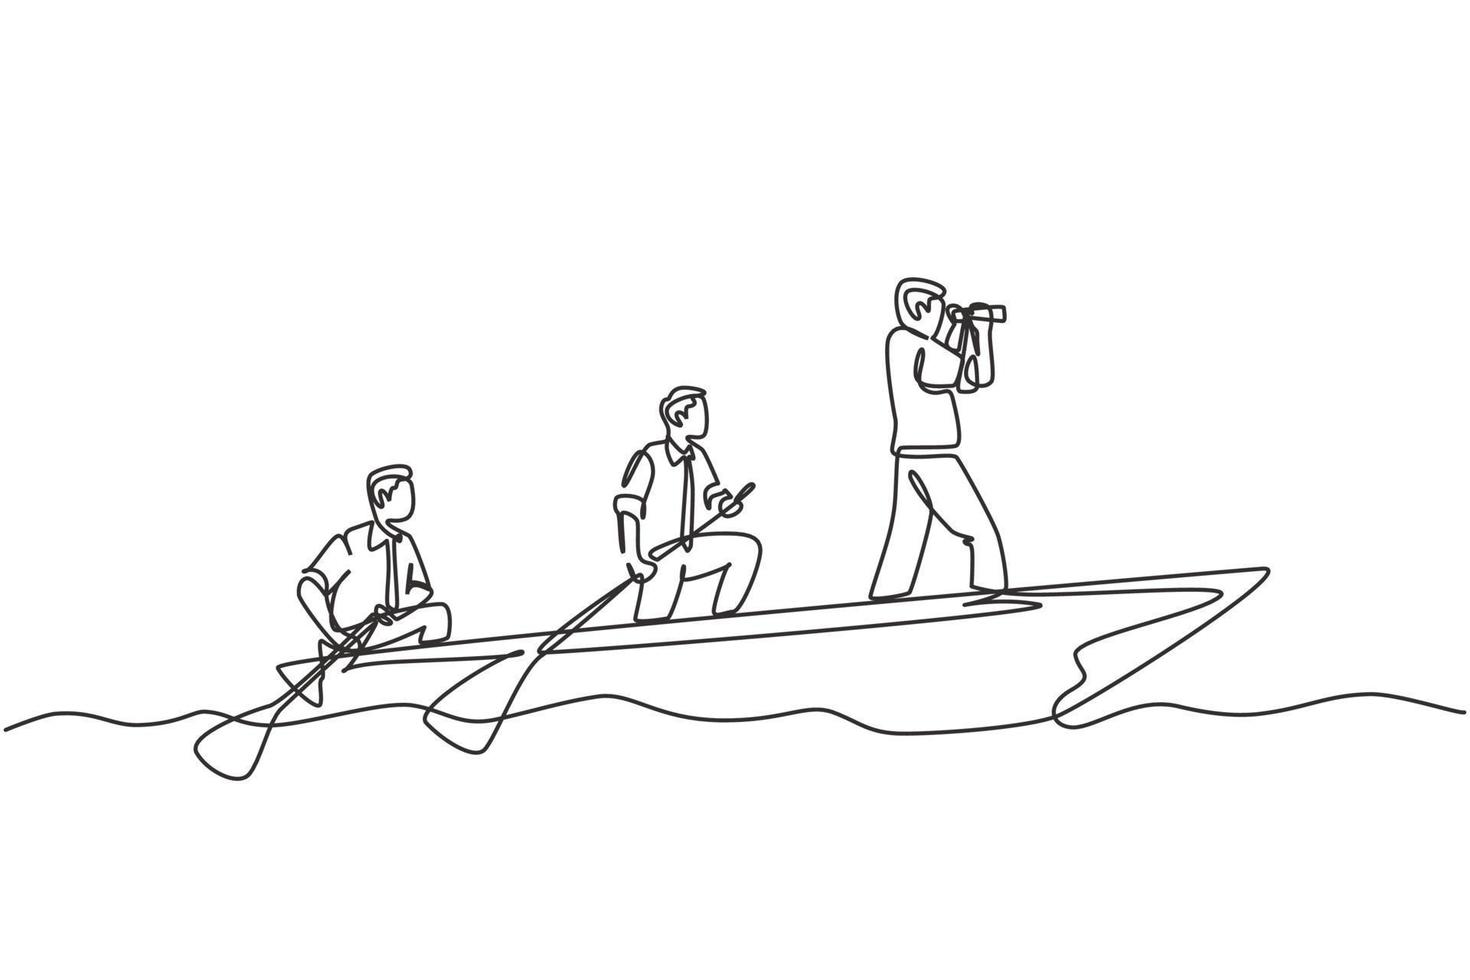 un dibujo de una sola línea de un joven miembro del equipo que toma un bote que se dirige a una isla mientras el líder los navega usando binoculares. Ilustración de vector de diseño de dibujo de línea continua de concepto de trabajo en equipo